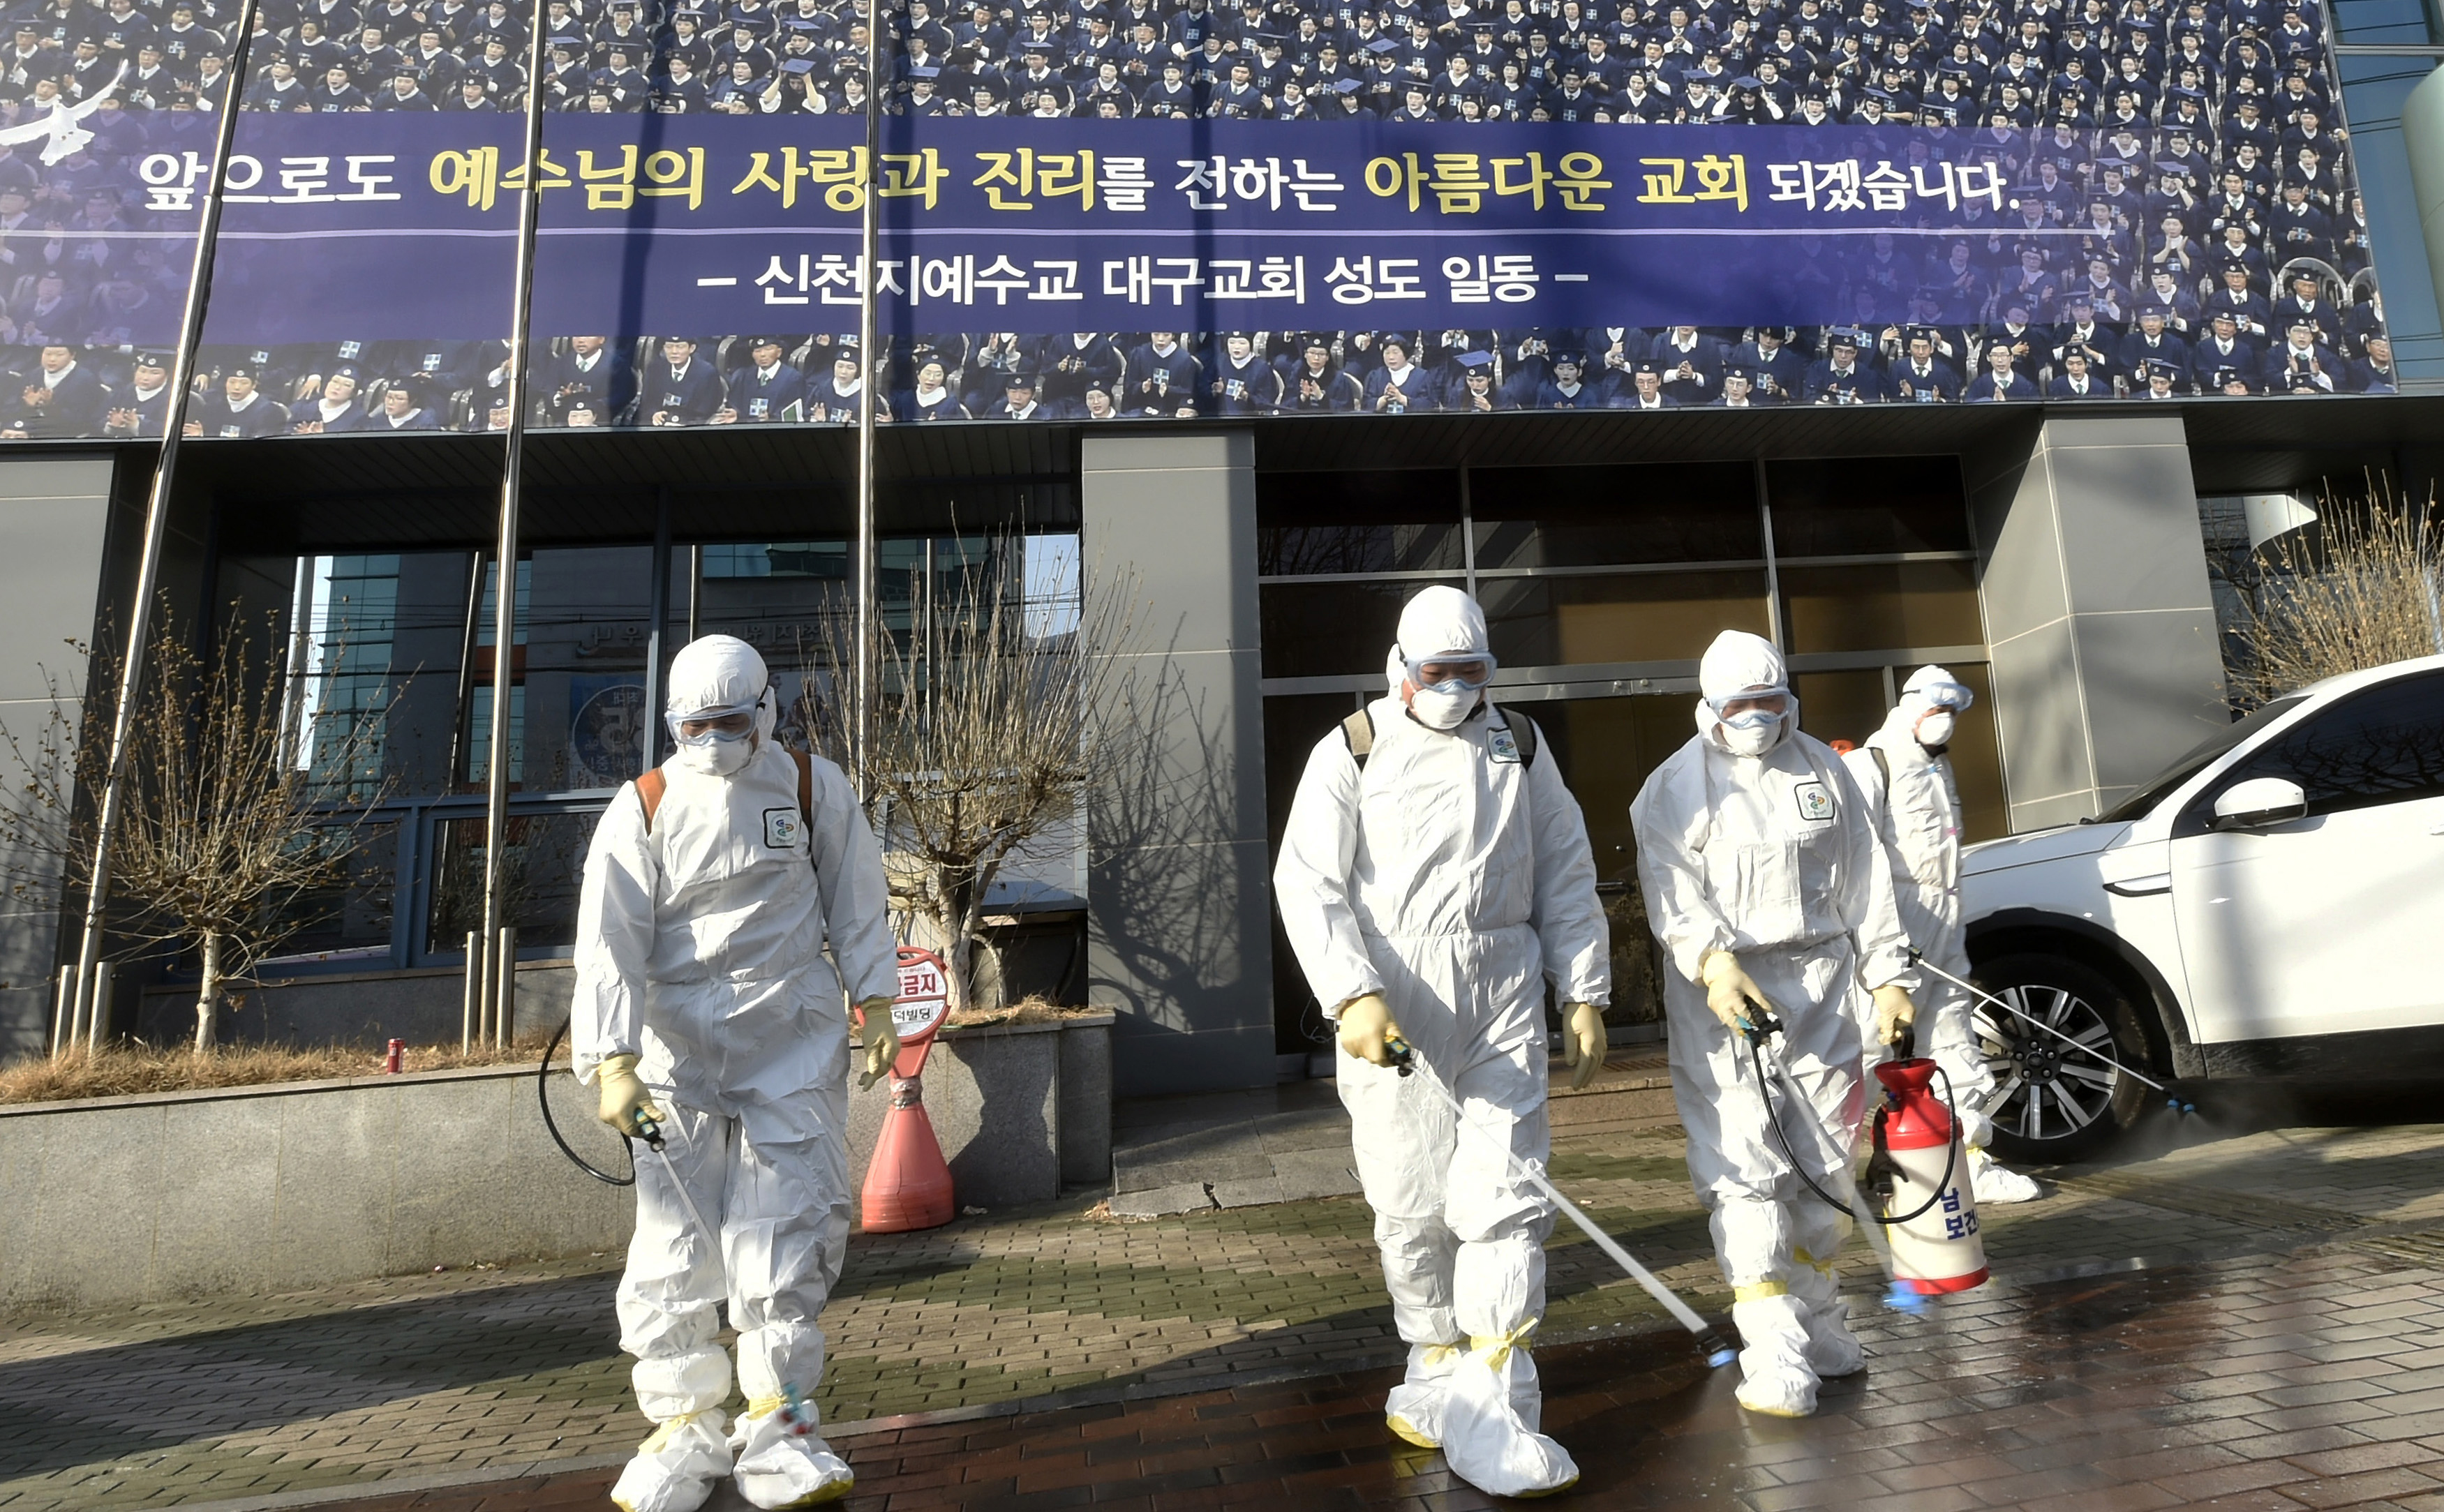 Egy szekta miatt terjedhet a koronavírus Dél-Koreában